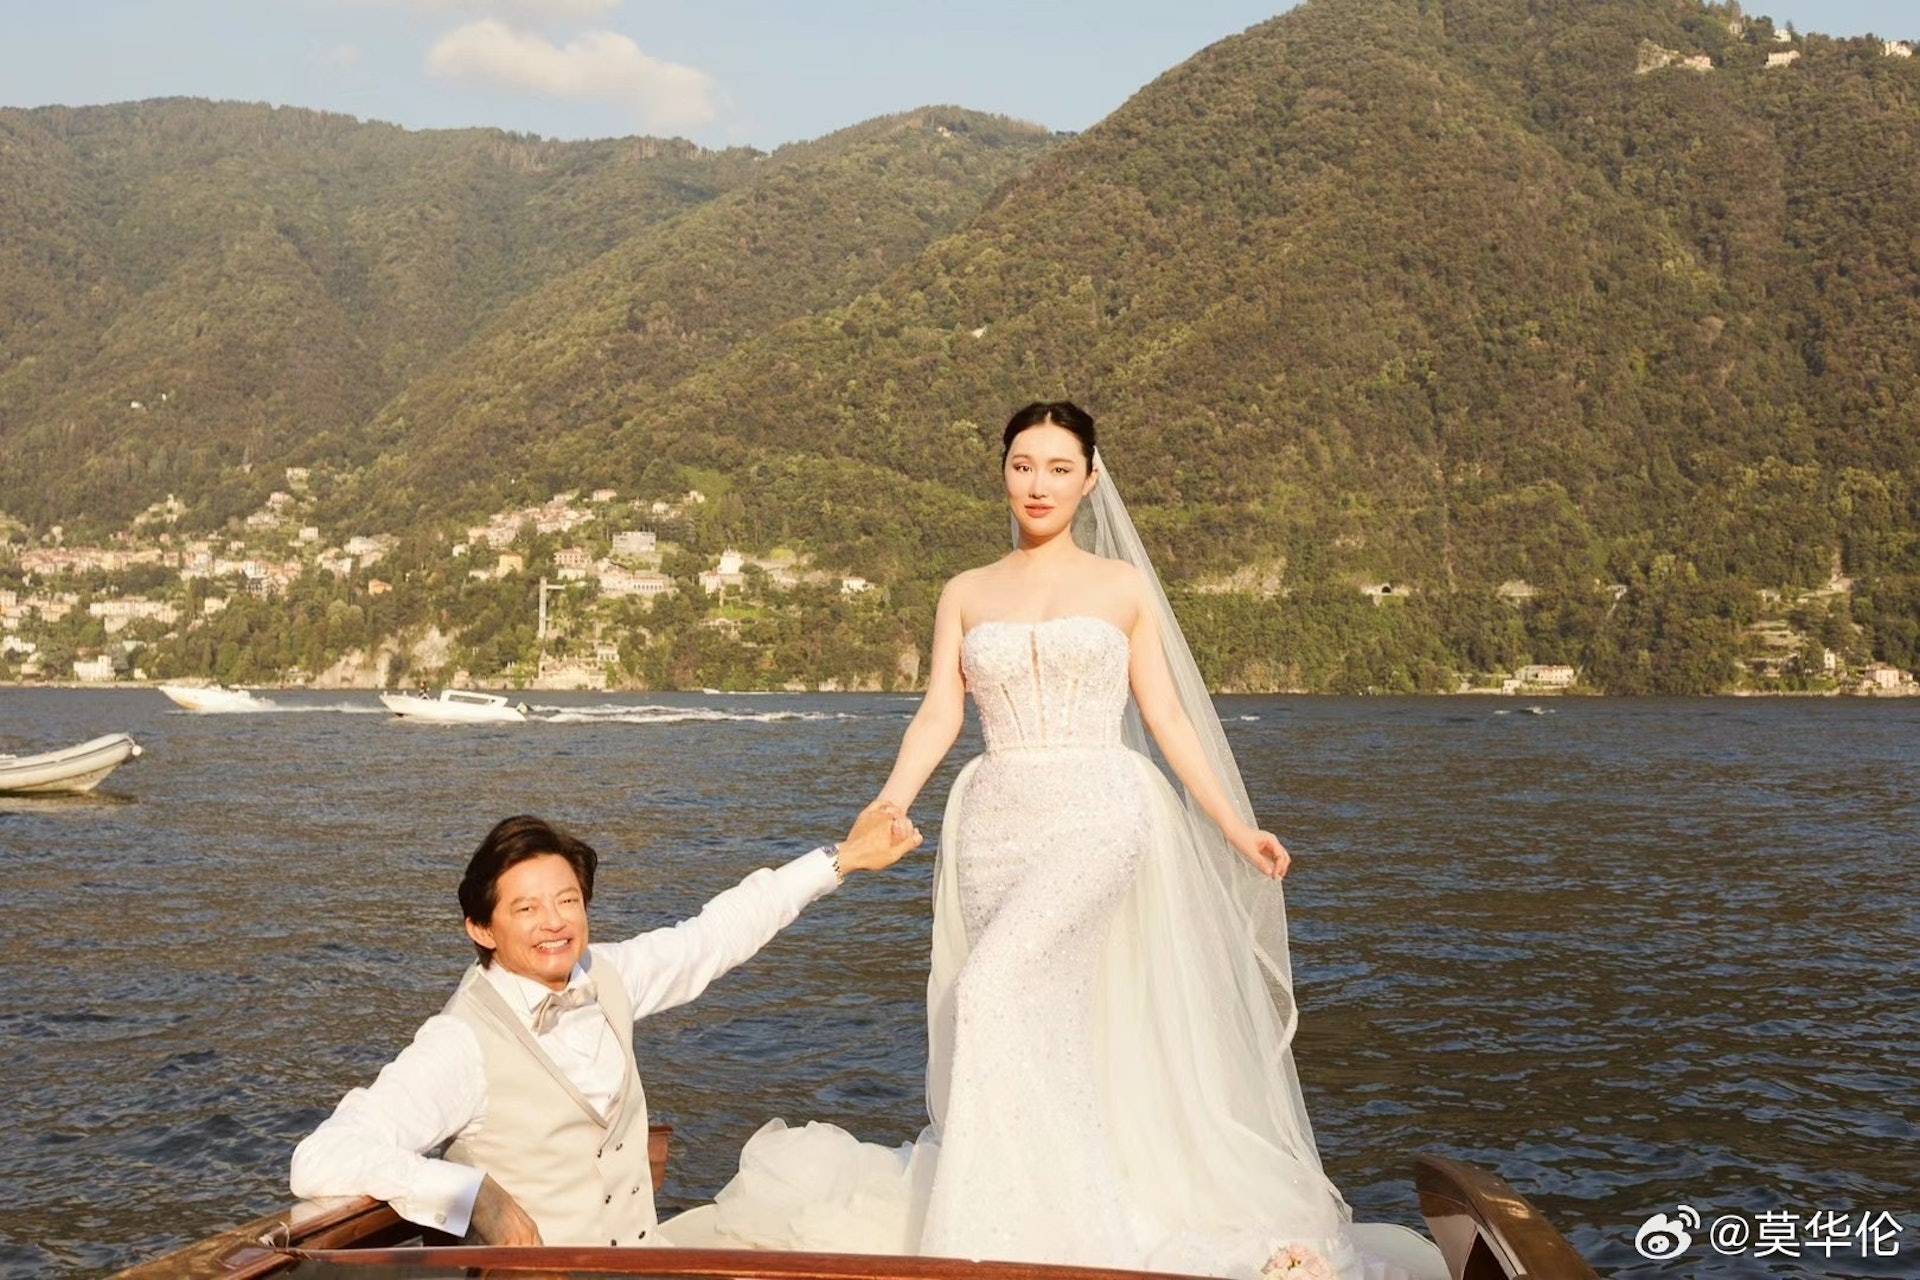 莫華倫 二人的婚禮在意大利的科莫湖舉行